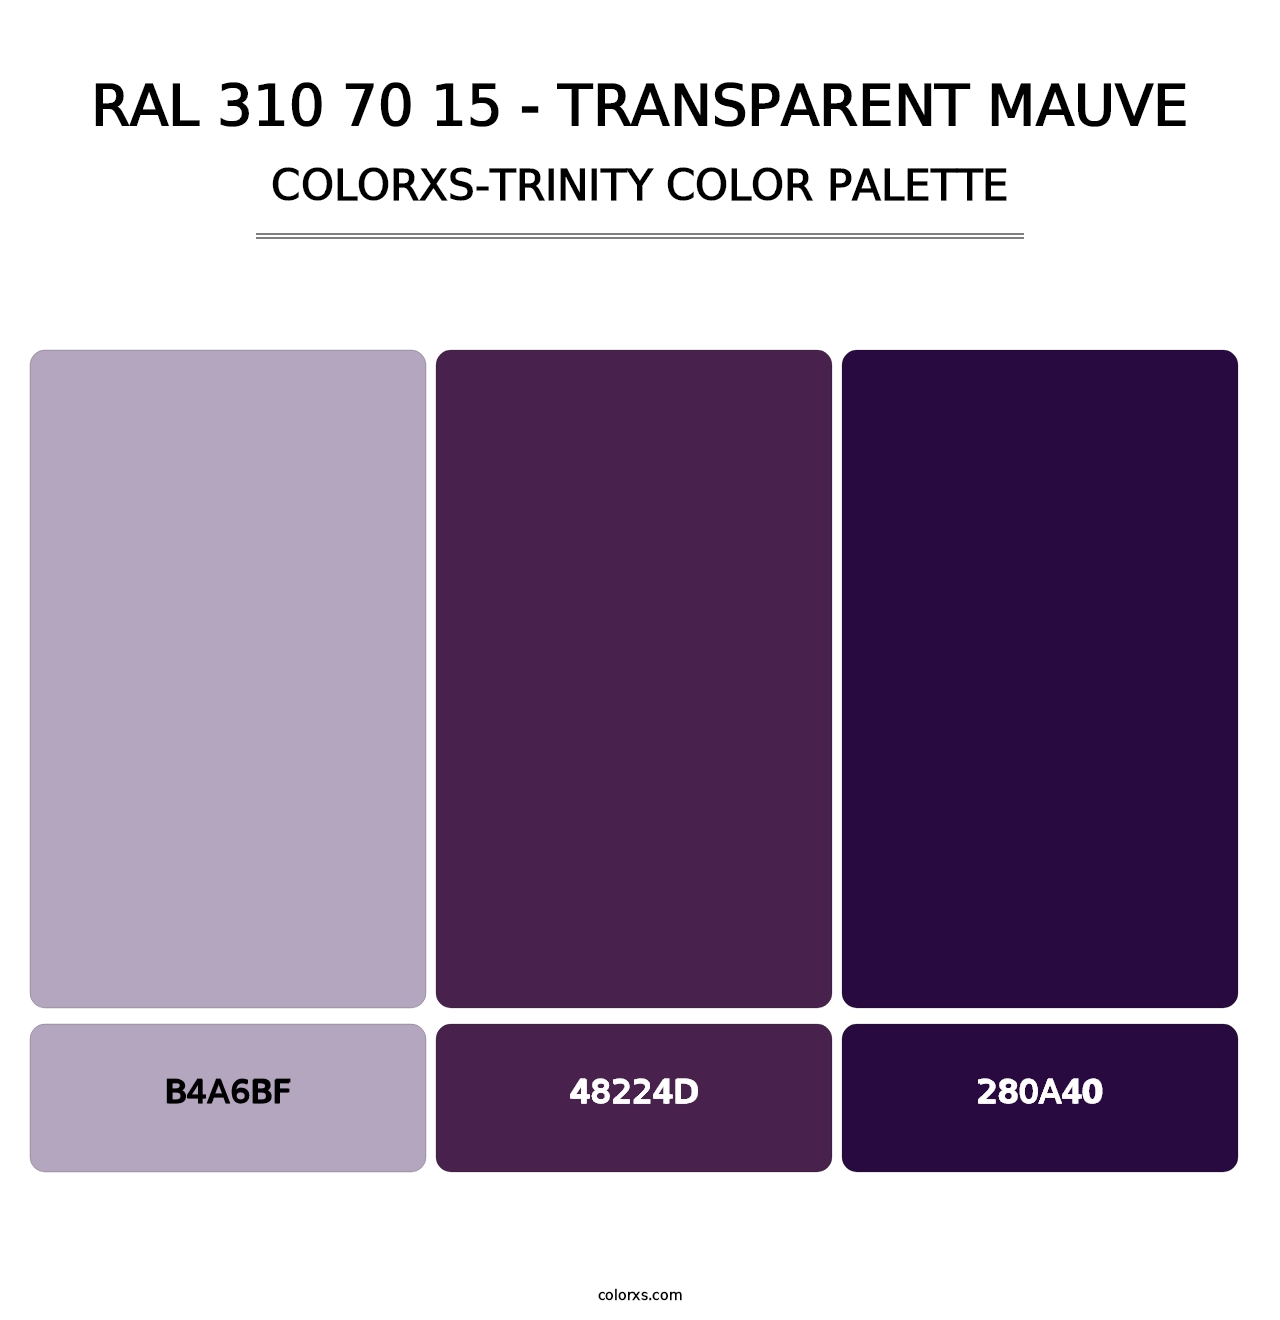 RAL 310 70 15 - Transparent Mauve - Colorxs Trinity Palette